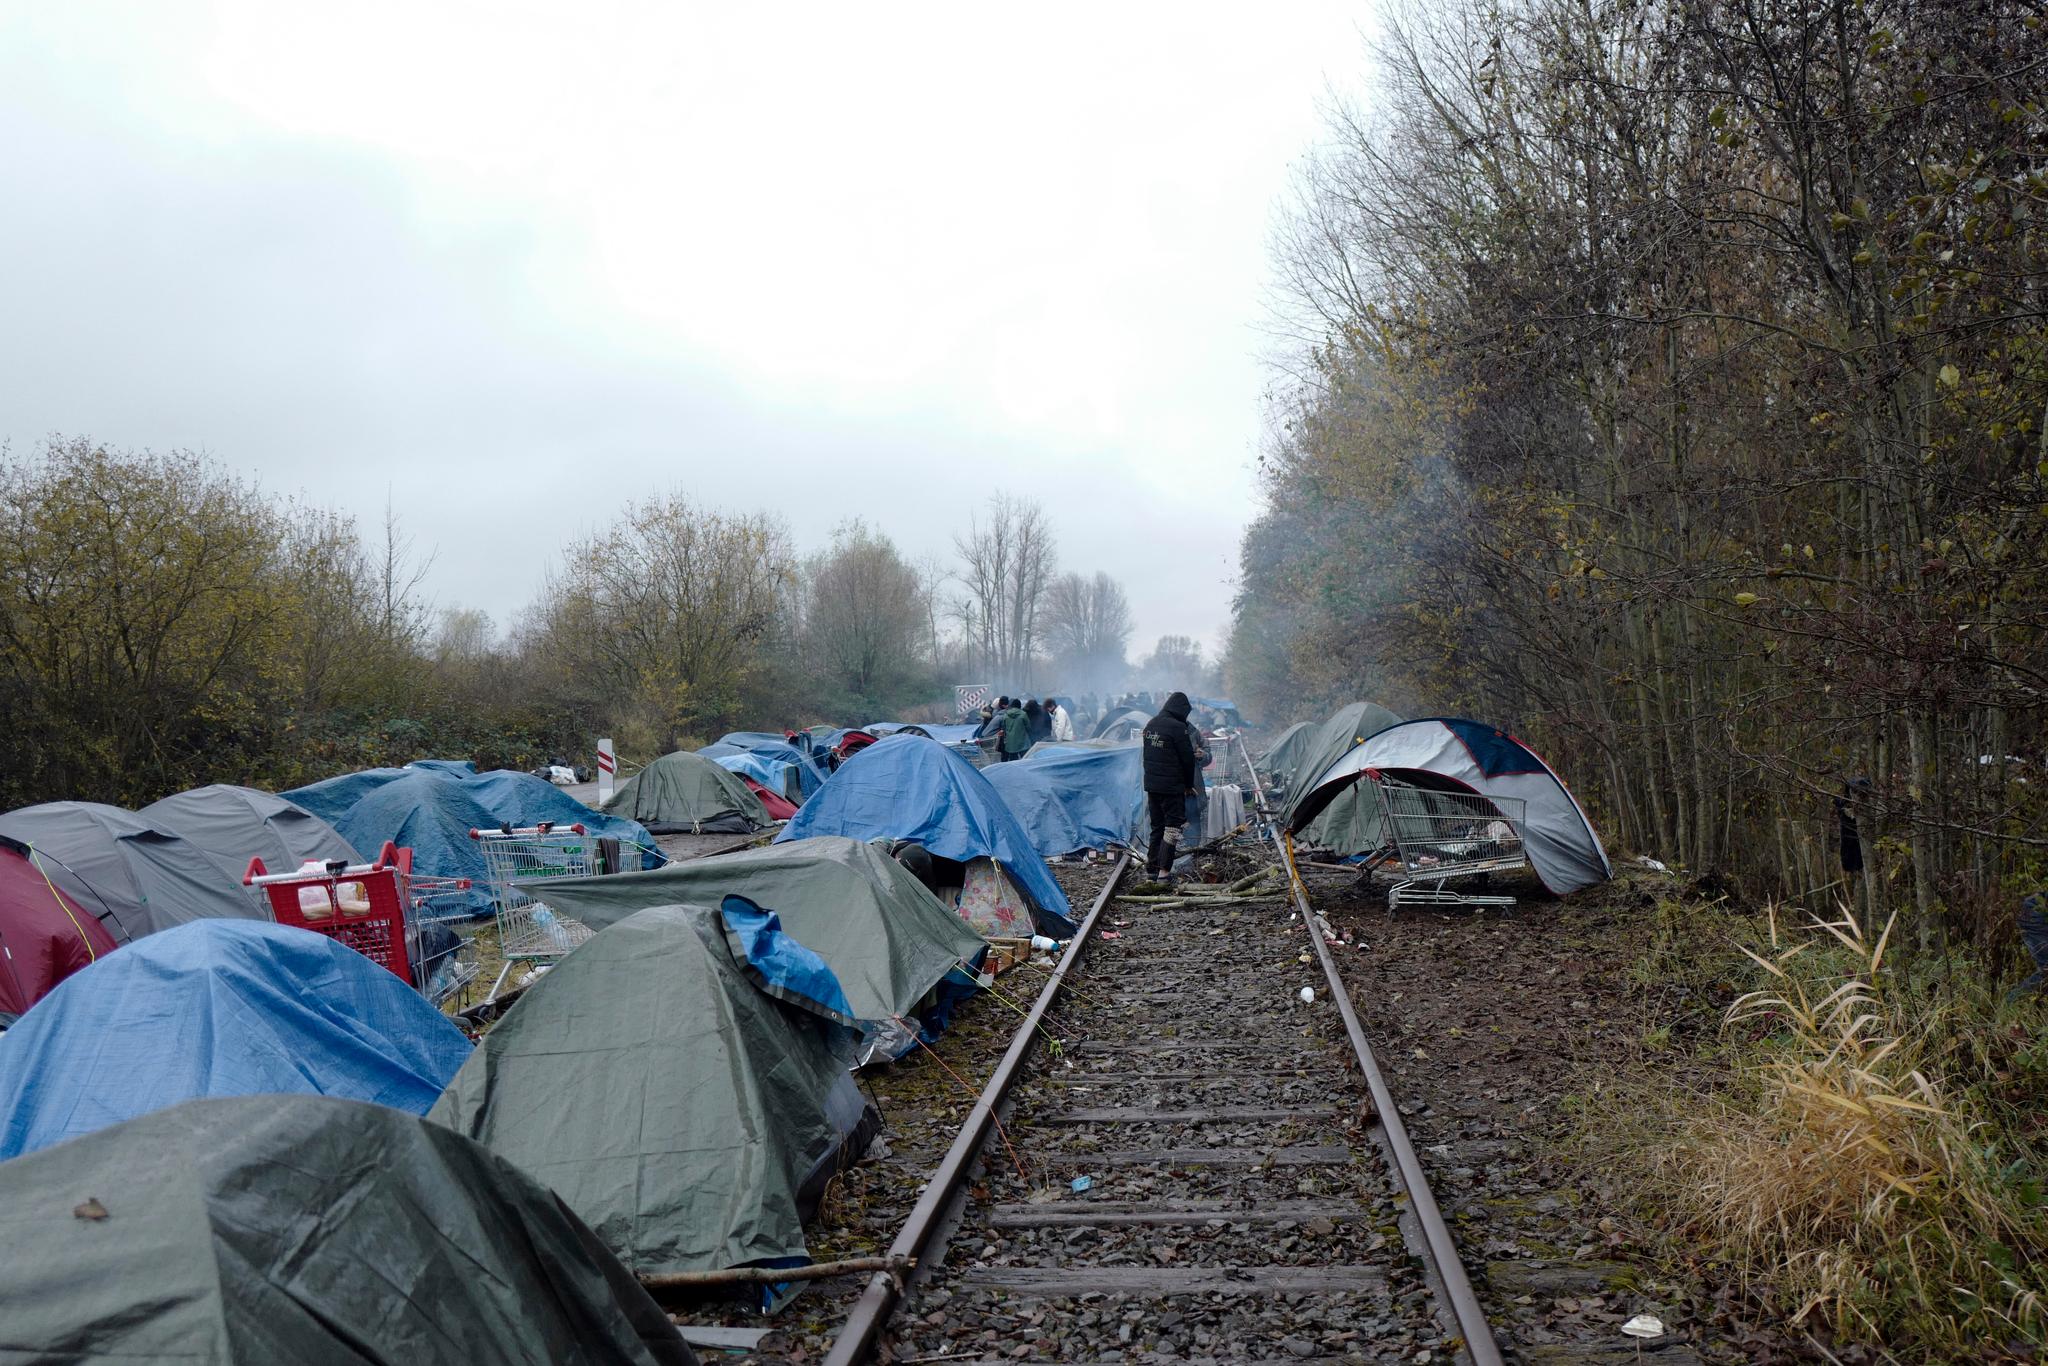 En gruppe kurdiske flyktninger har slått seg til ved en jernbanelinje som ikke er i bruk, i nærheten av Calais og Dunkirk.